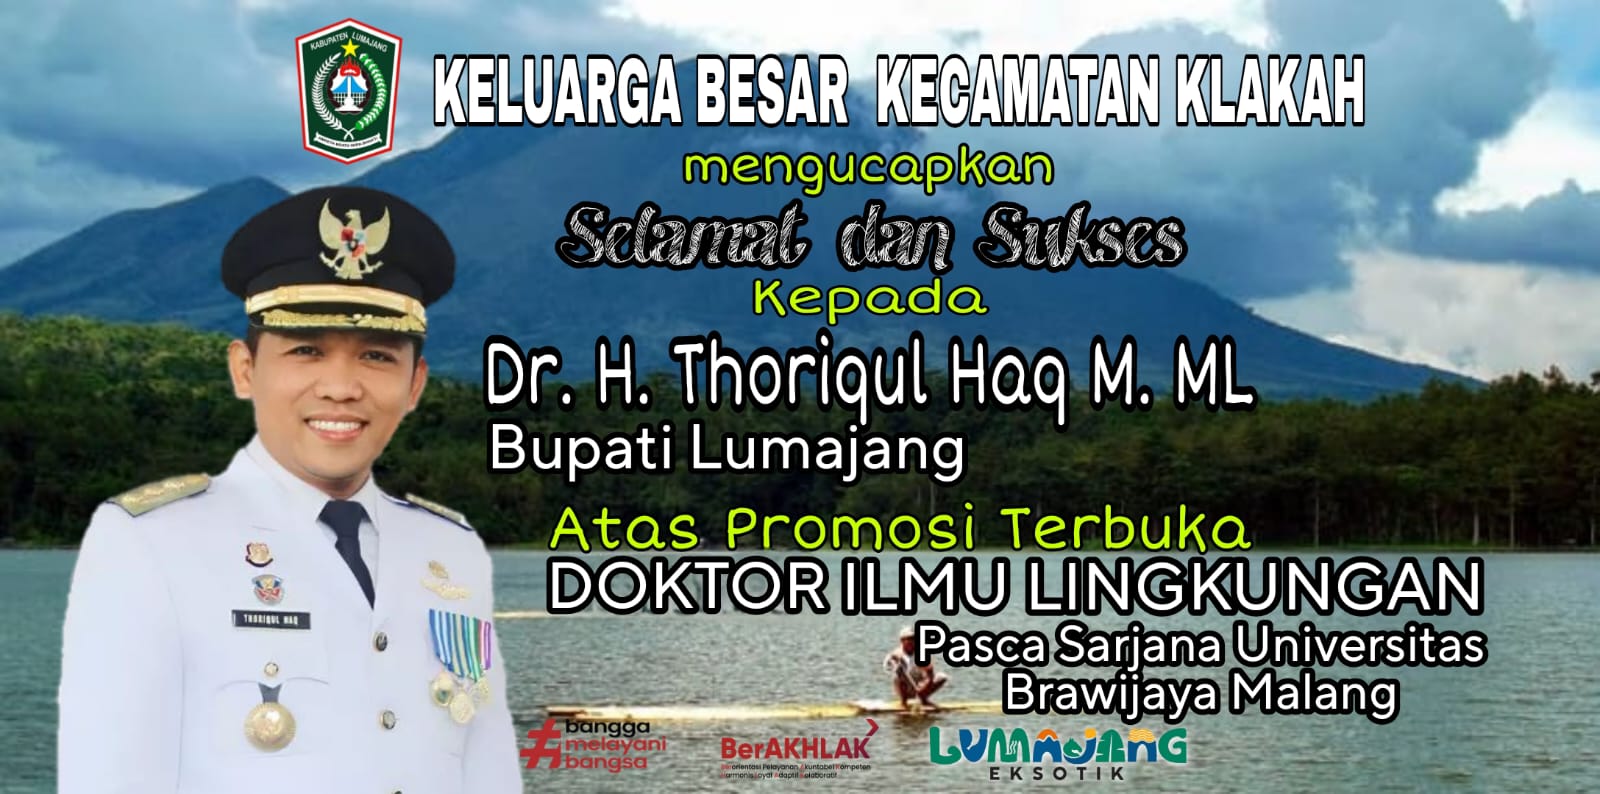 selamat Kepada Bapak Bupati Lumajang Dr. H. THORIQUL HAQ M. ML atas Promosi Terbuka DOKTOR ILMU LING